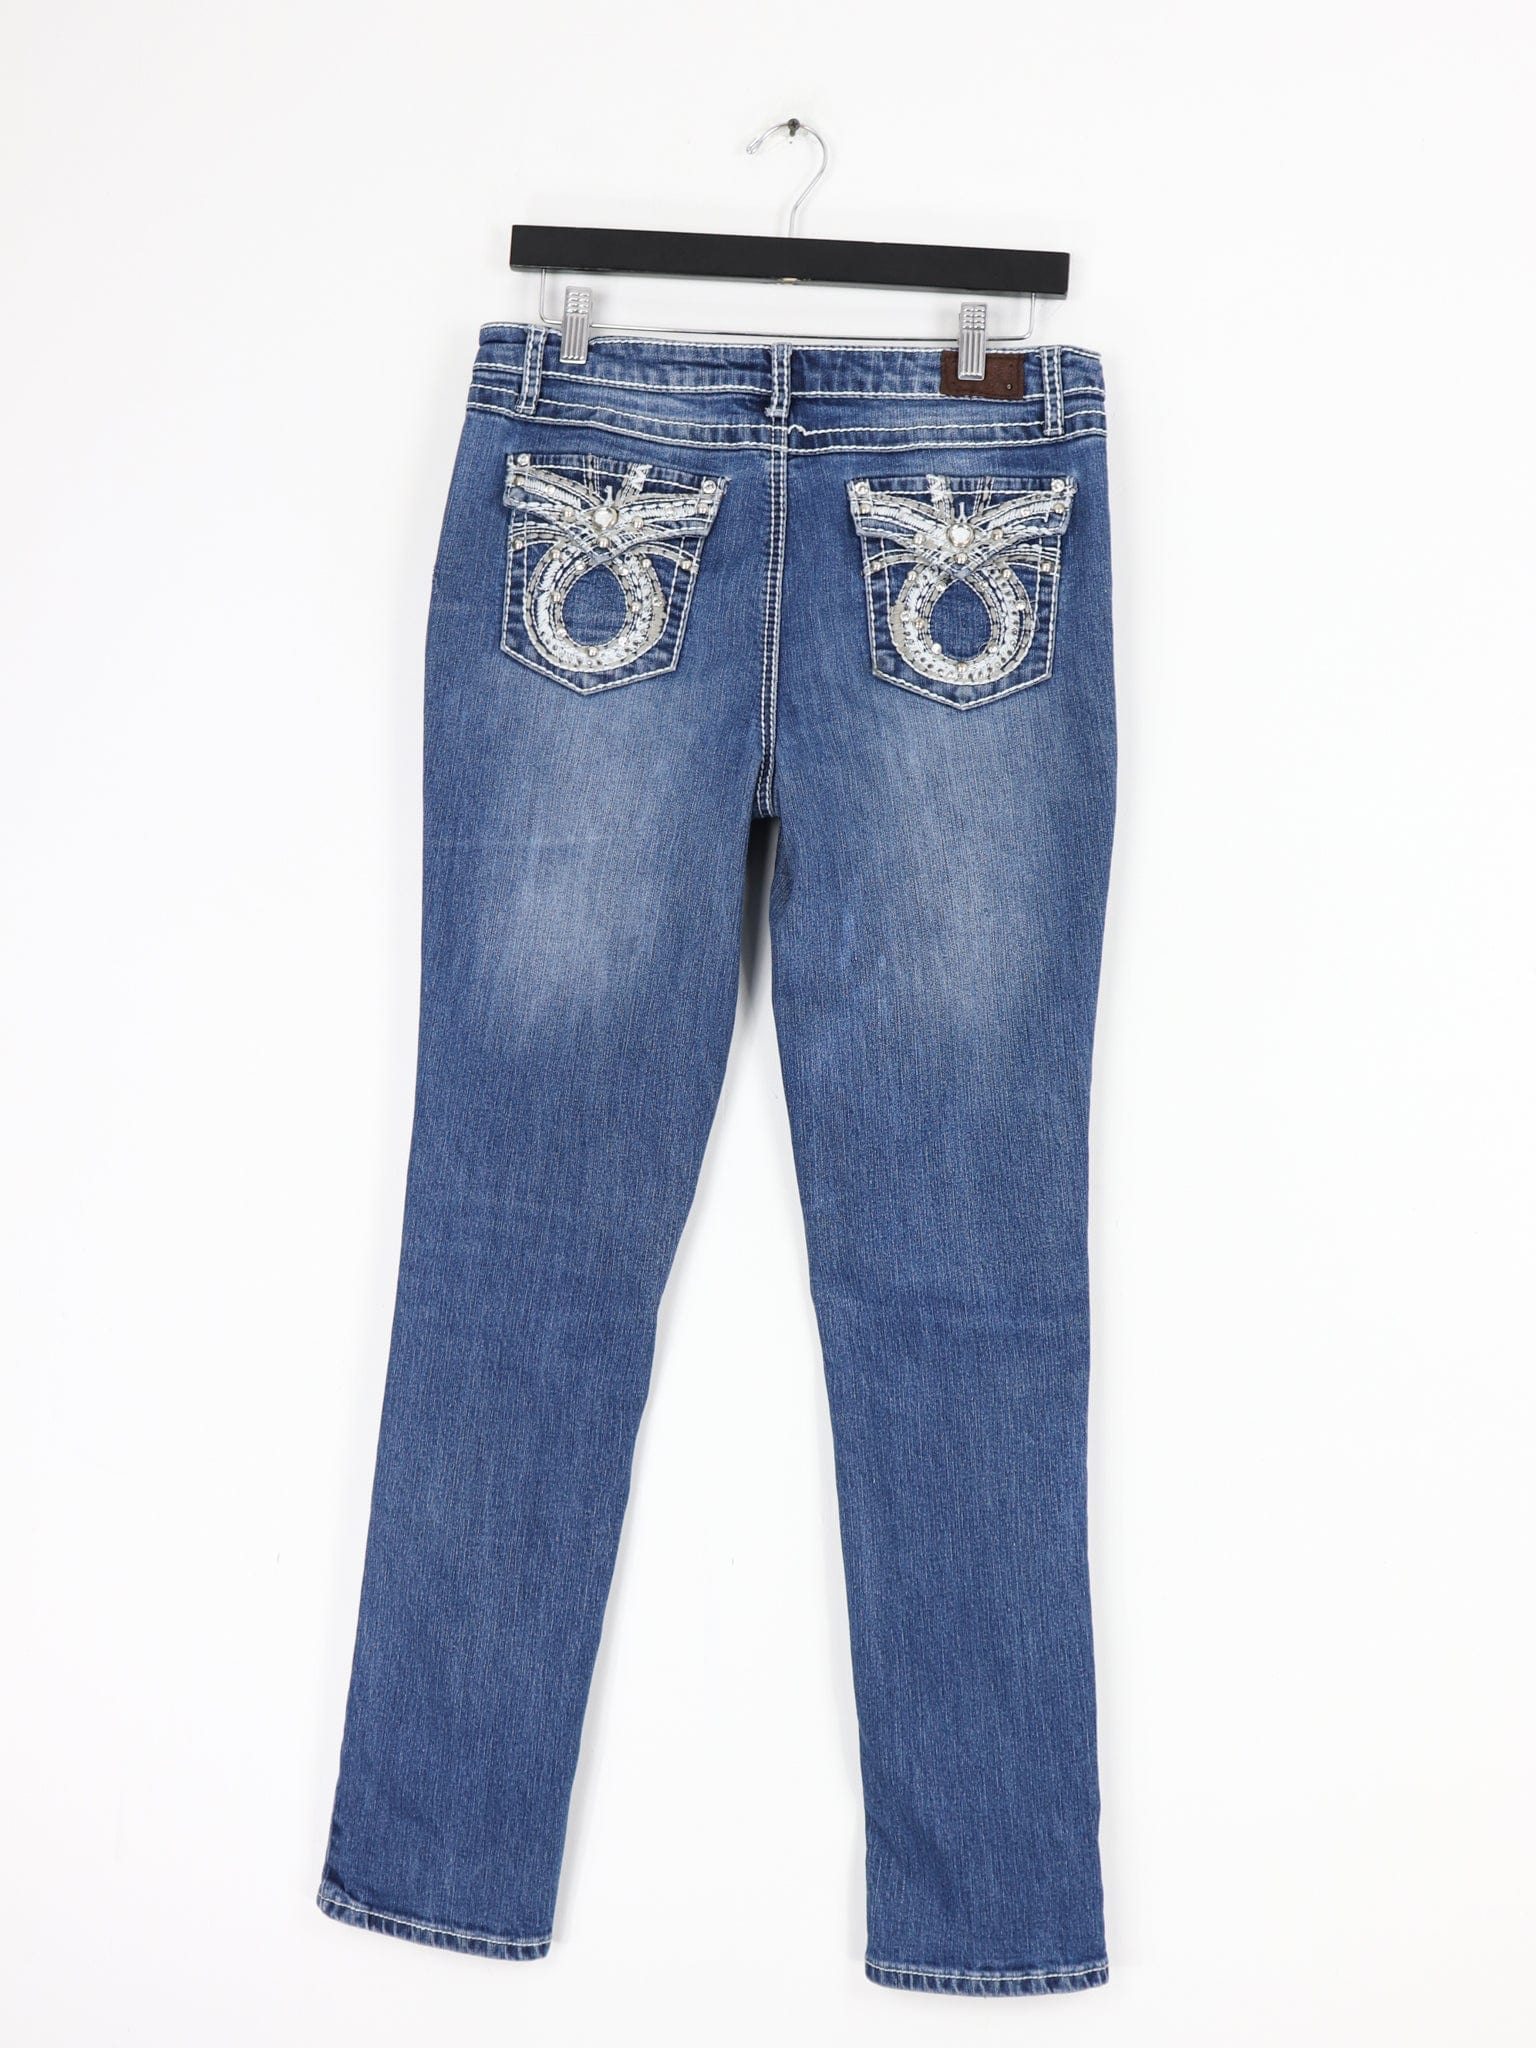 Earl Jeans Fashion for Women